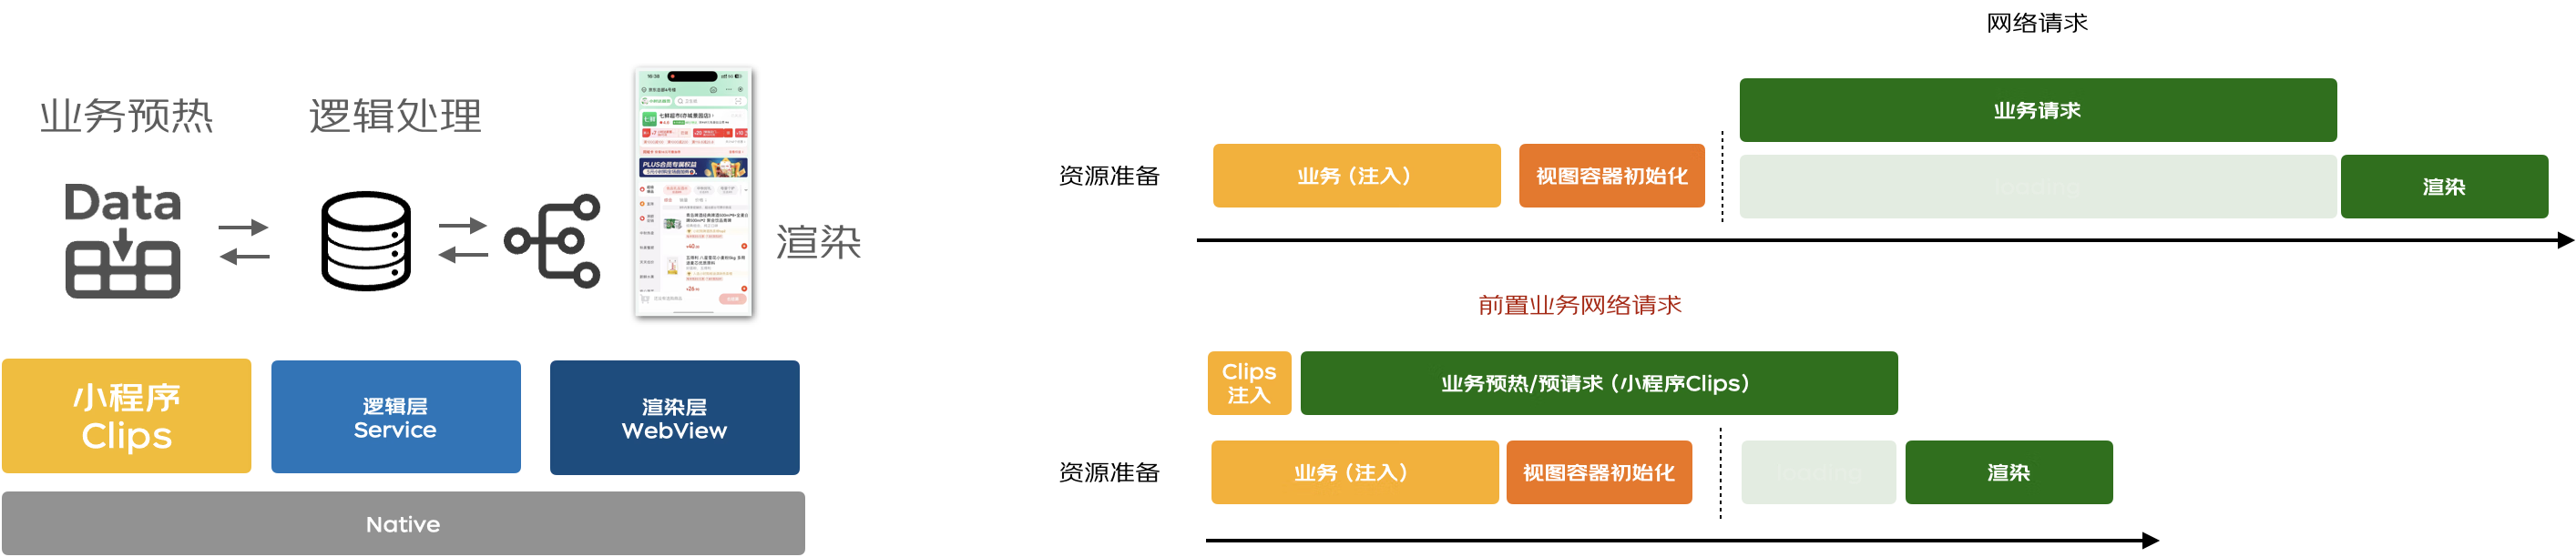 【最佳实践】京东小程序-LBS业务场景的性能提升